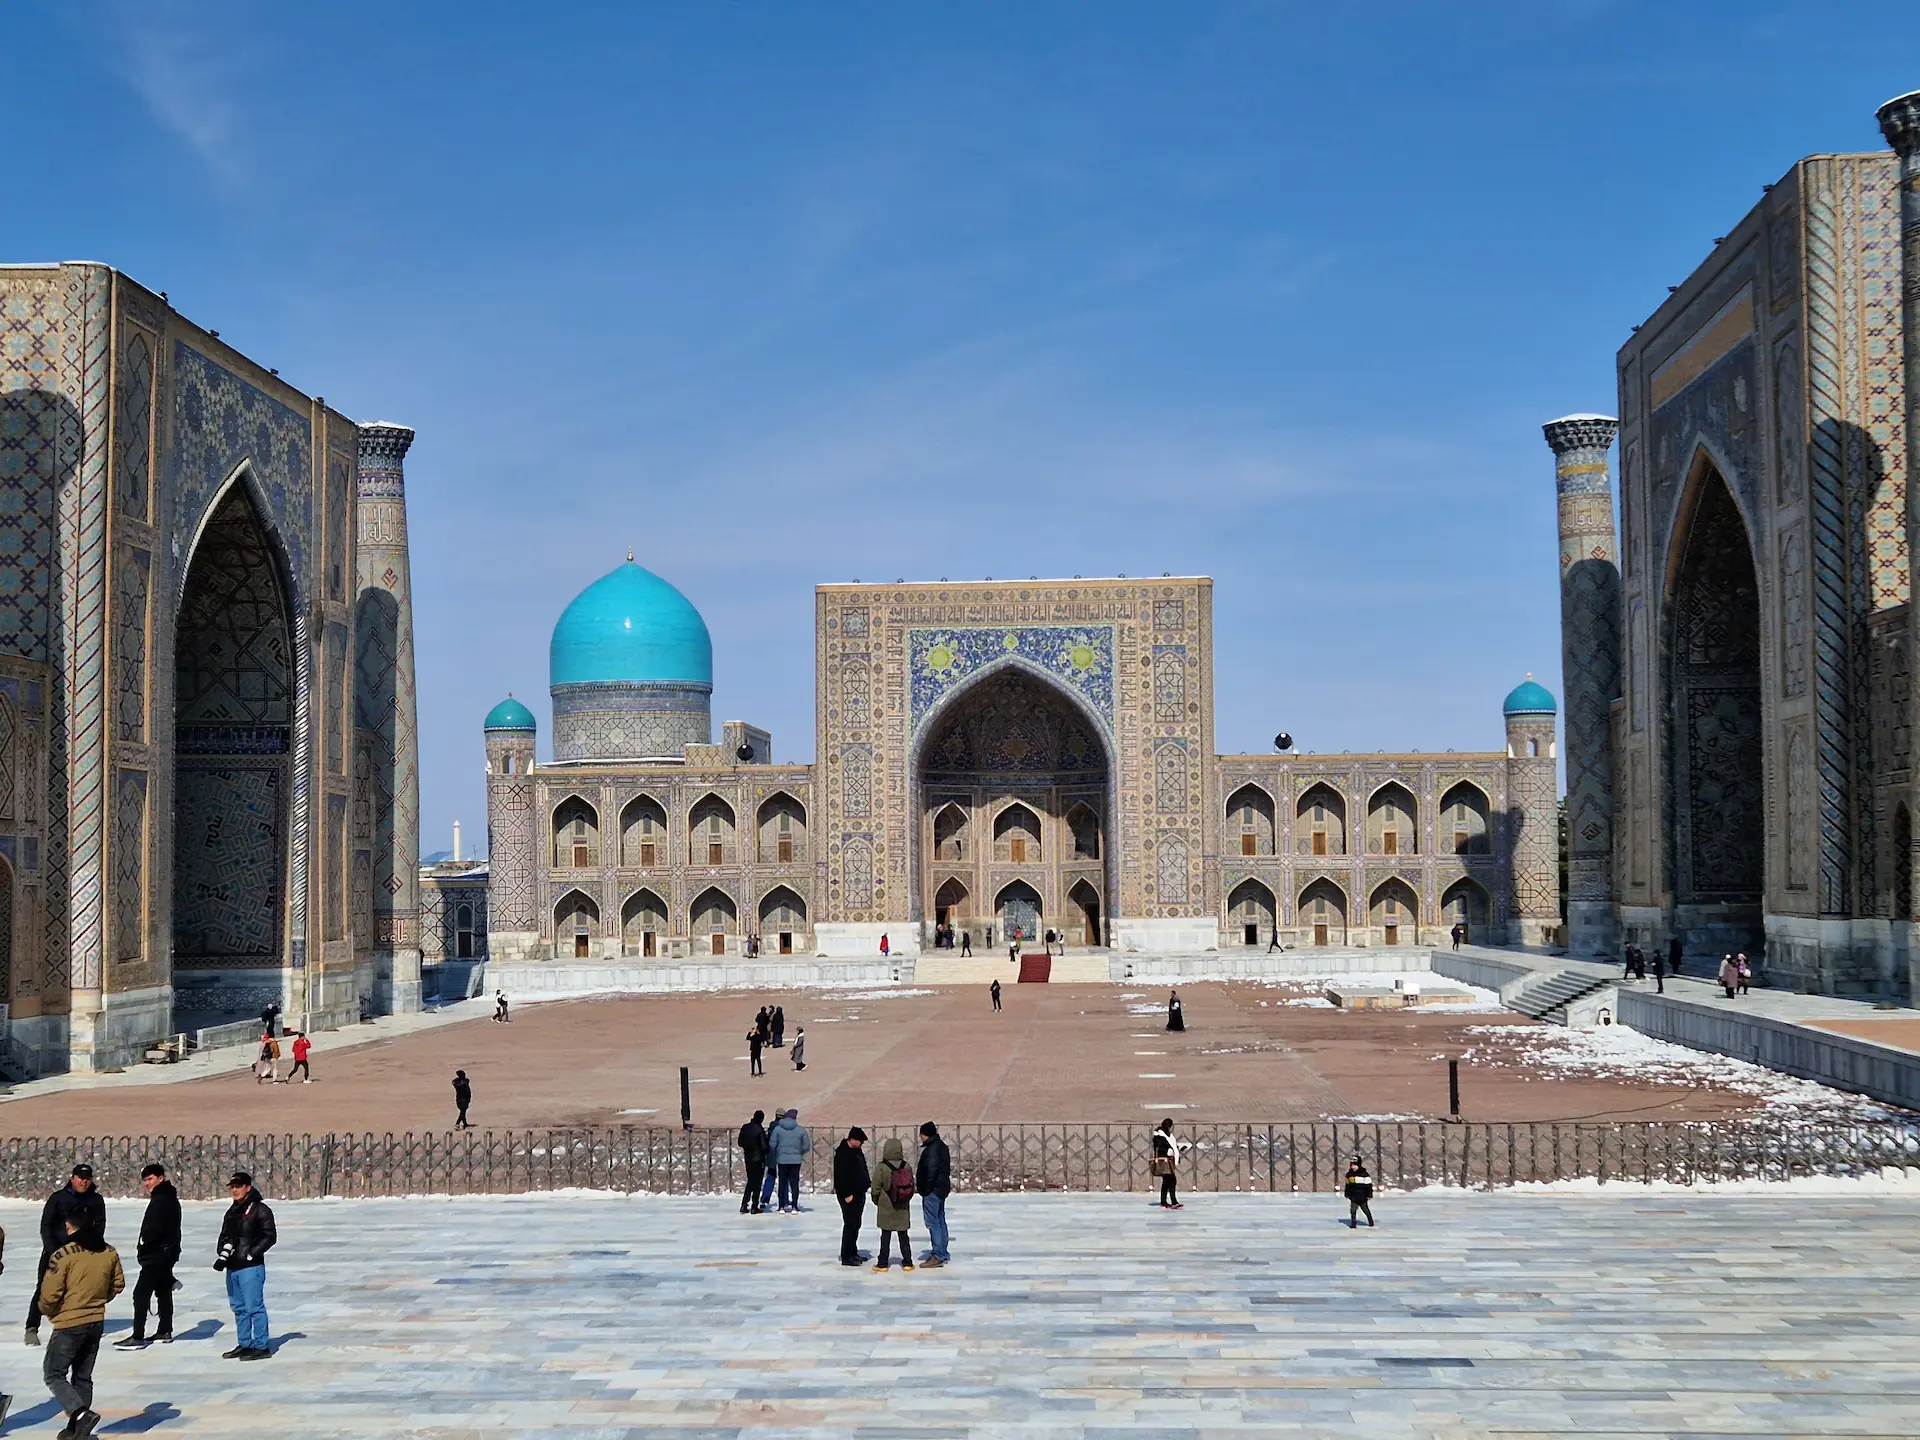 La place du Registan construite en symétrie, trois madrassas entourent la place.